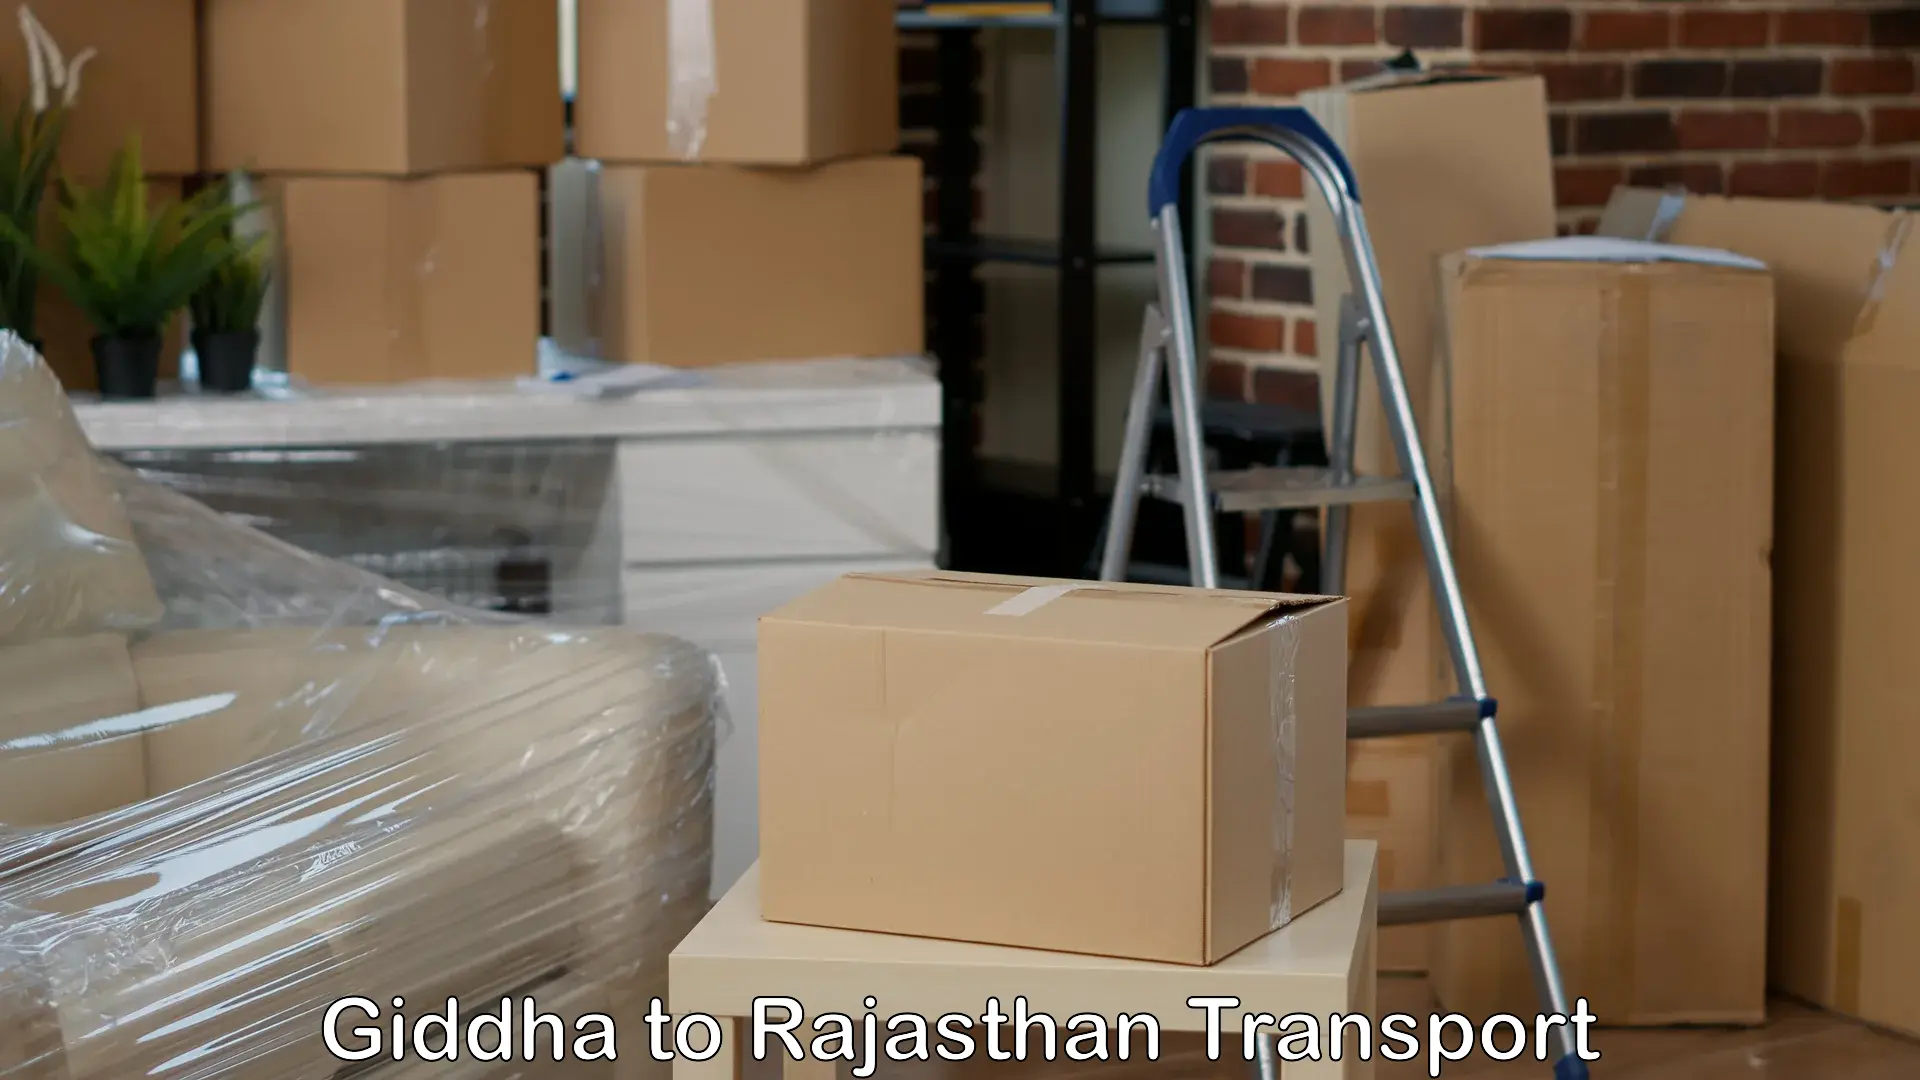 Cargo transport services Giddha to Bikaner